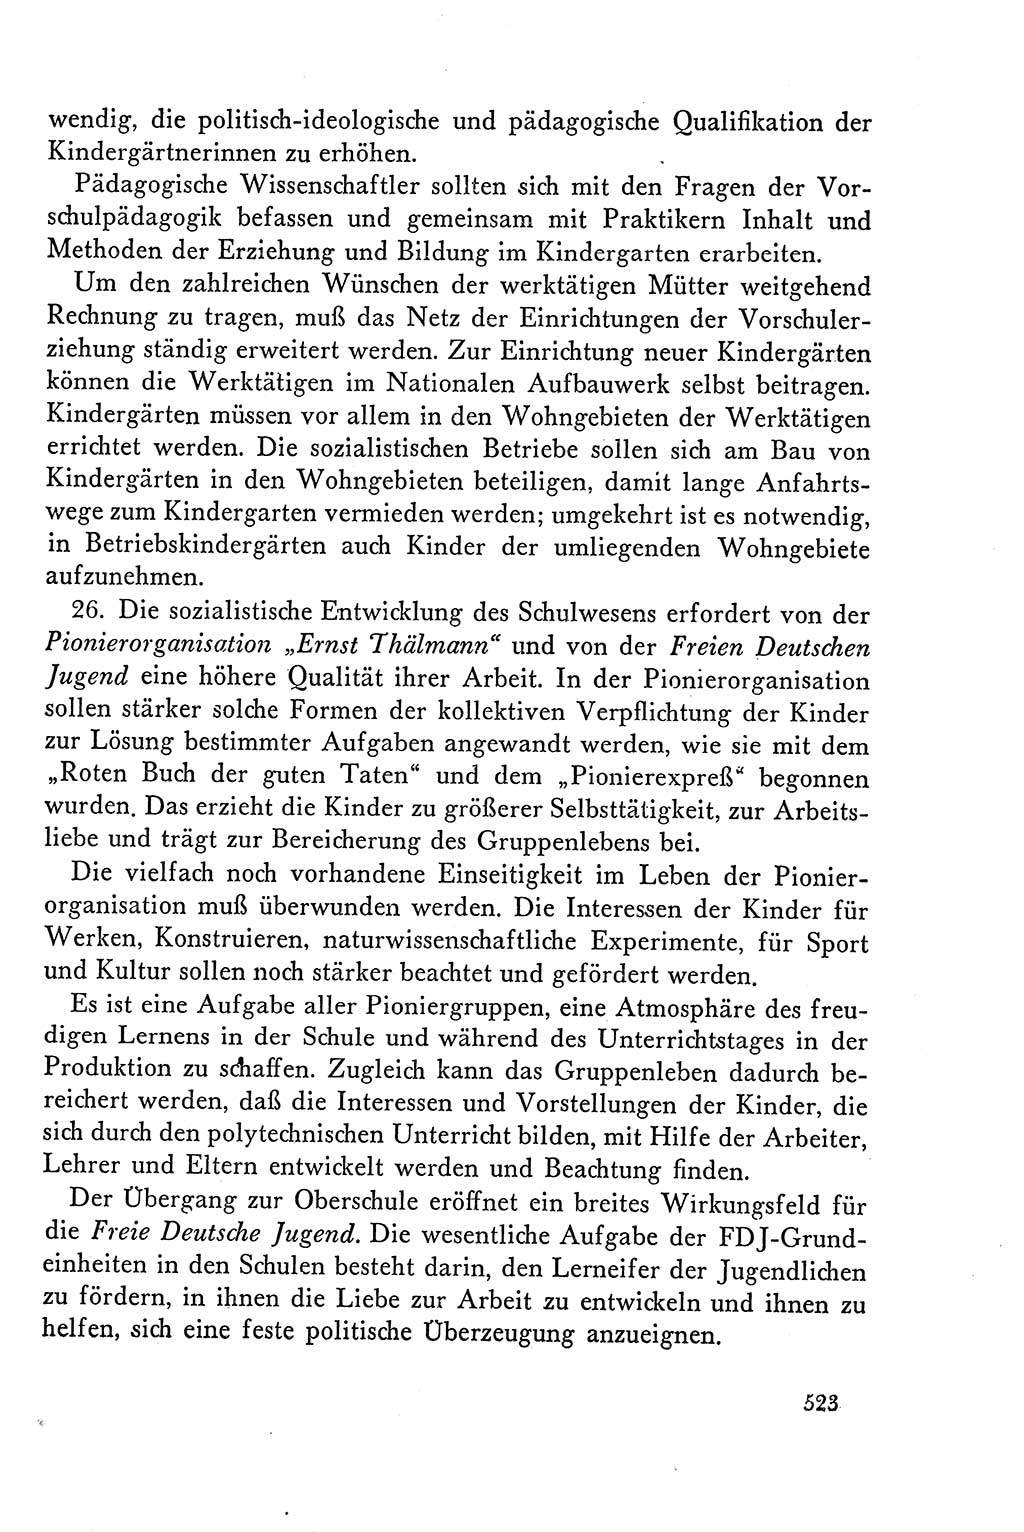 Dokumente der Sozialistischen Einheitspartei Deutschlands (SED) [Deutsche Demokratische Republik (DDR)] 1958-1959, Seite 523 (Dok. SED DDR 1958-1959, S. 523)